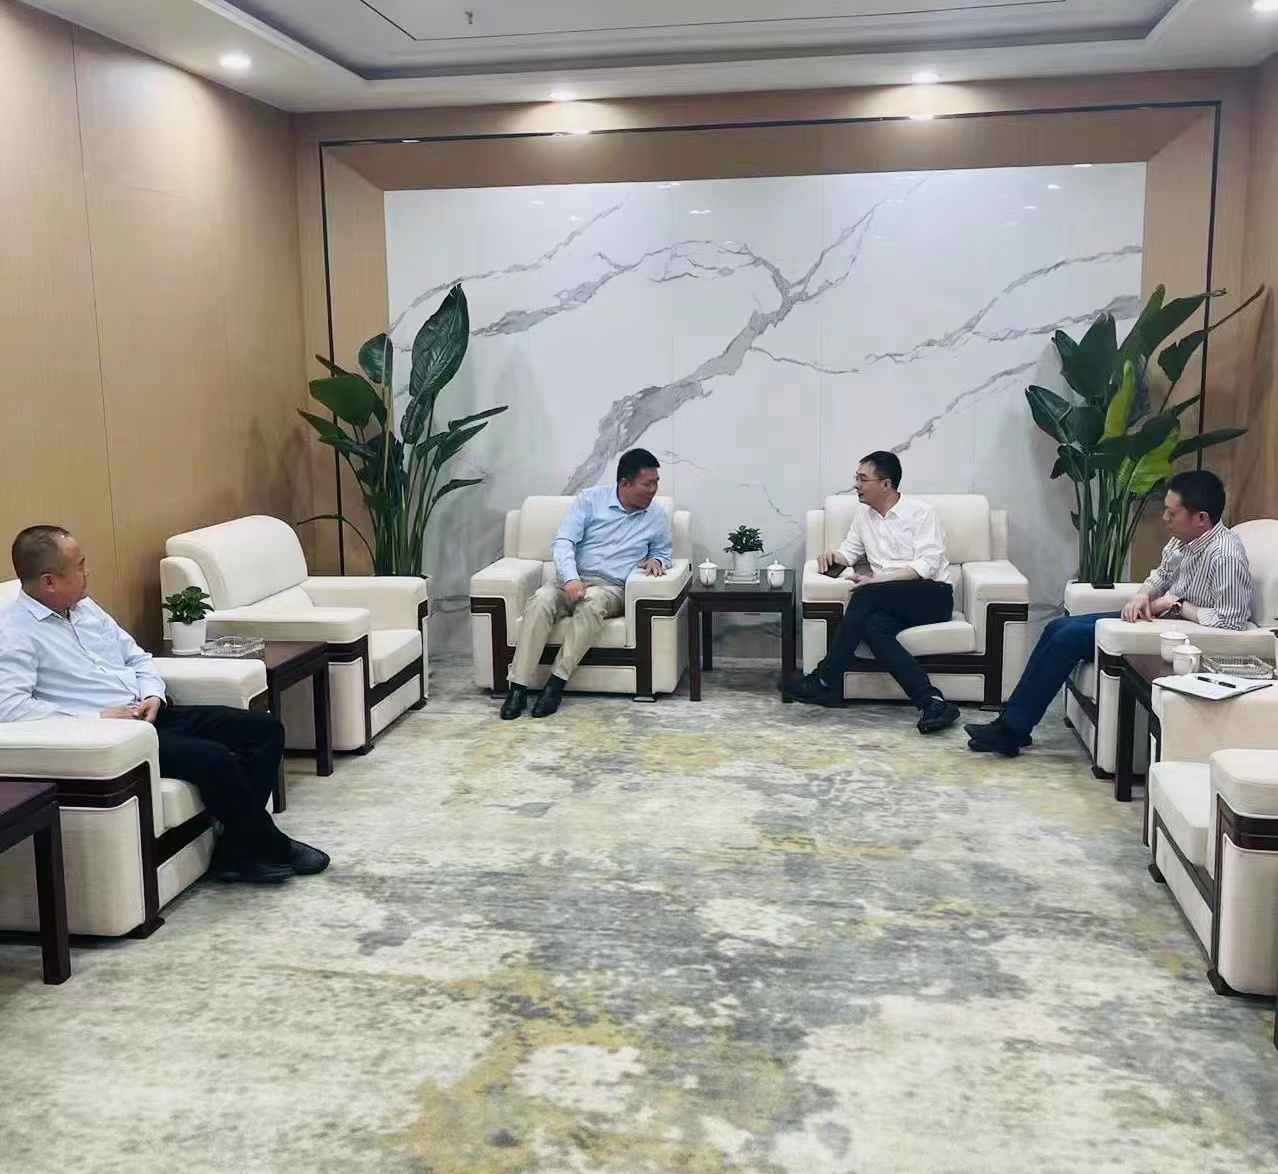 陕西铂海供应链管理集团有限公司 与农商公司进行座谈交流